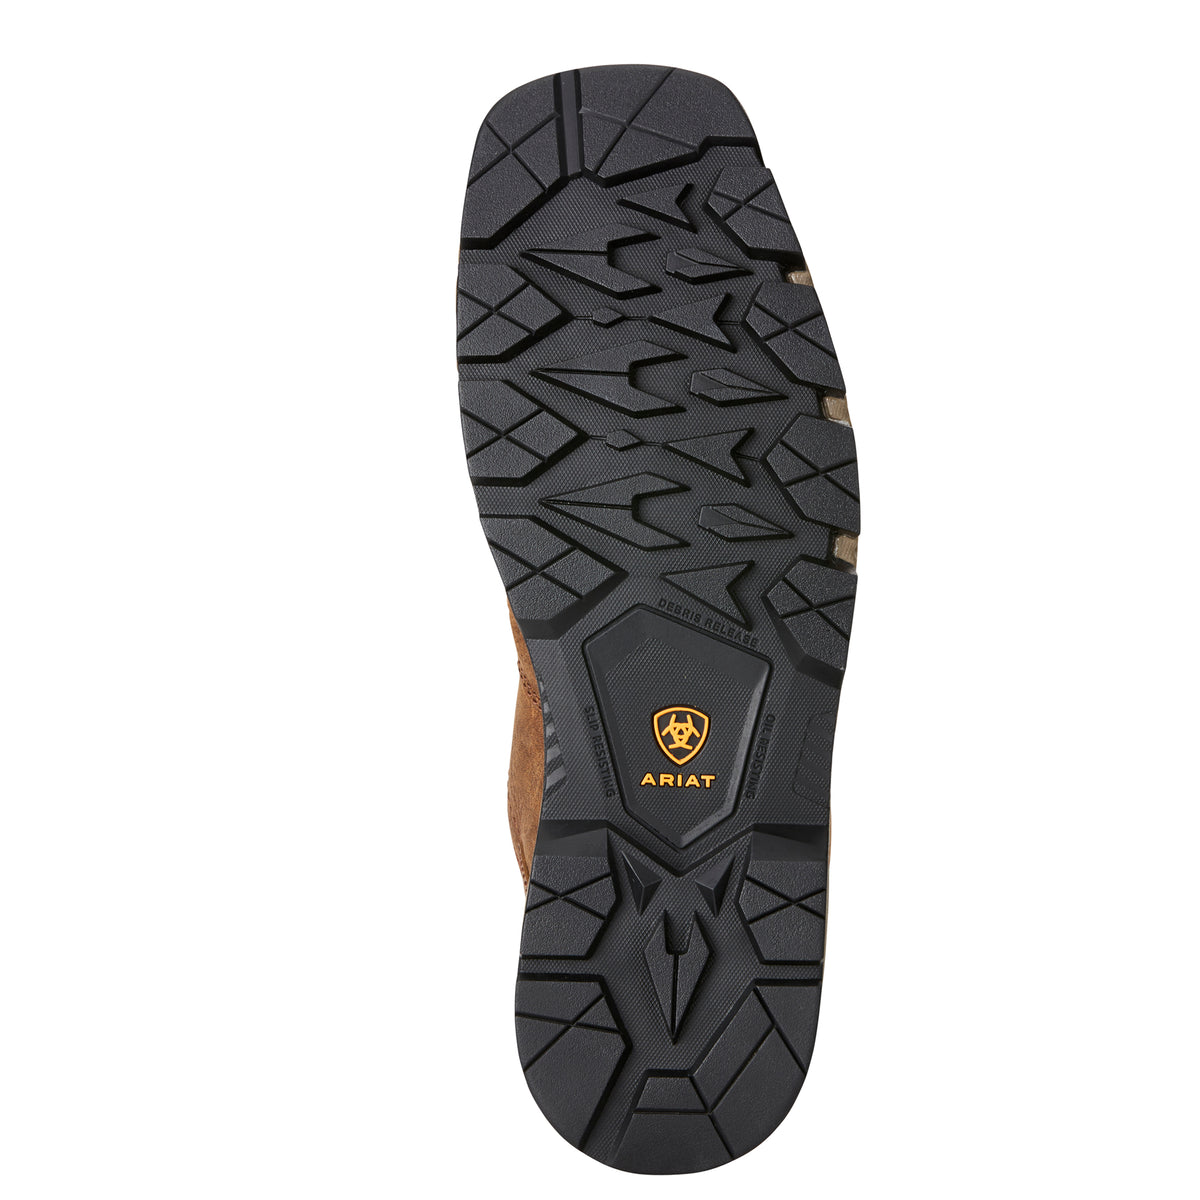 Men's Ariat Rebar Flex Western 10" Waterproof Composite Toe Boot